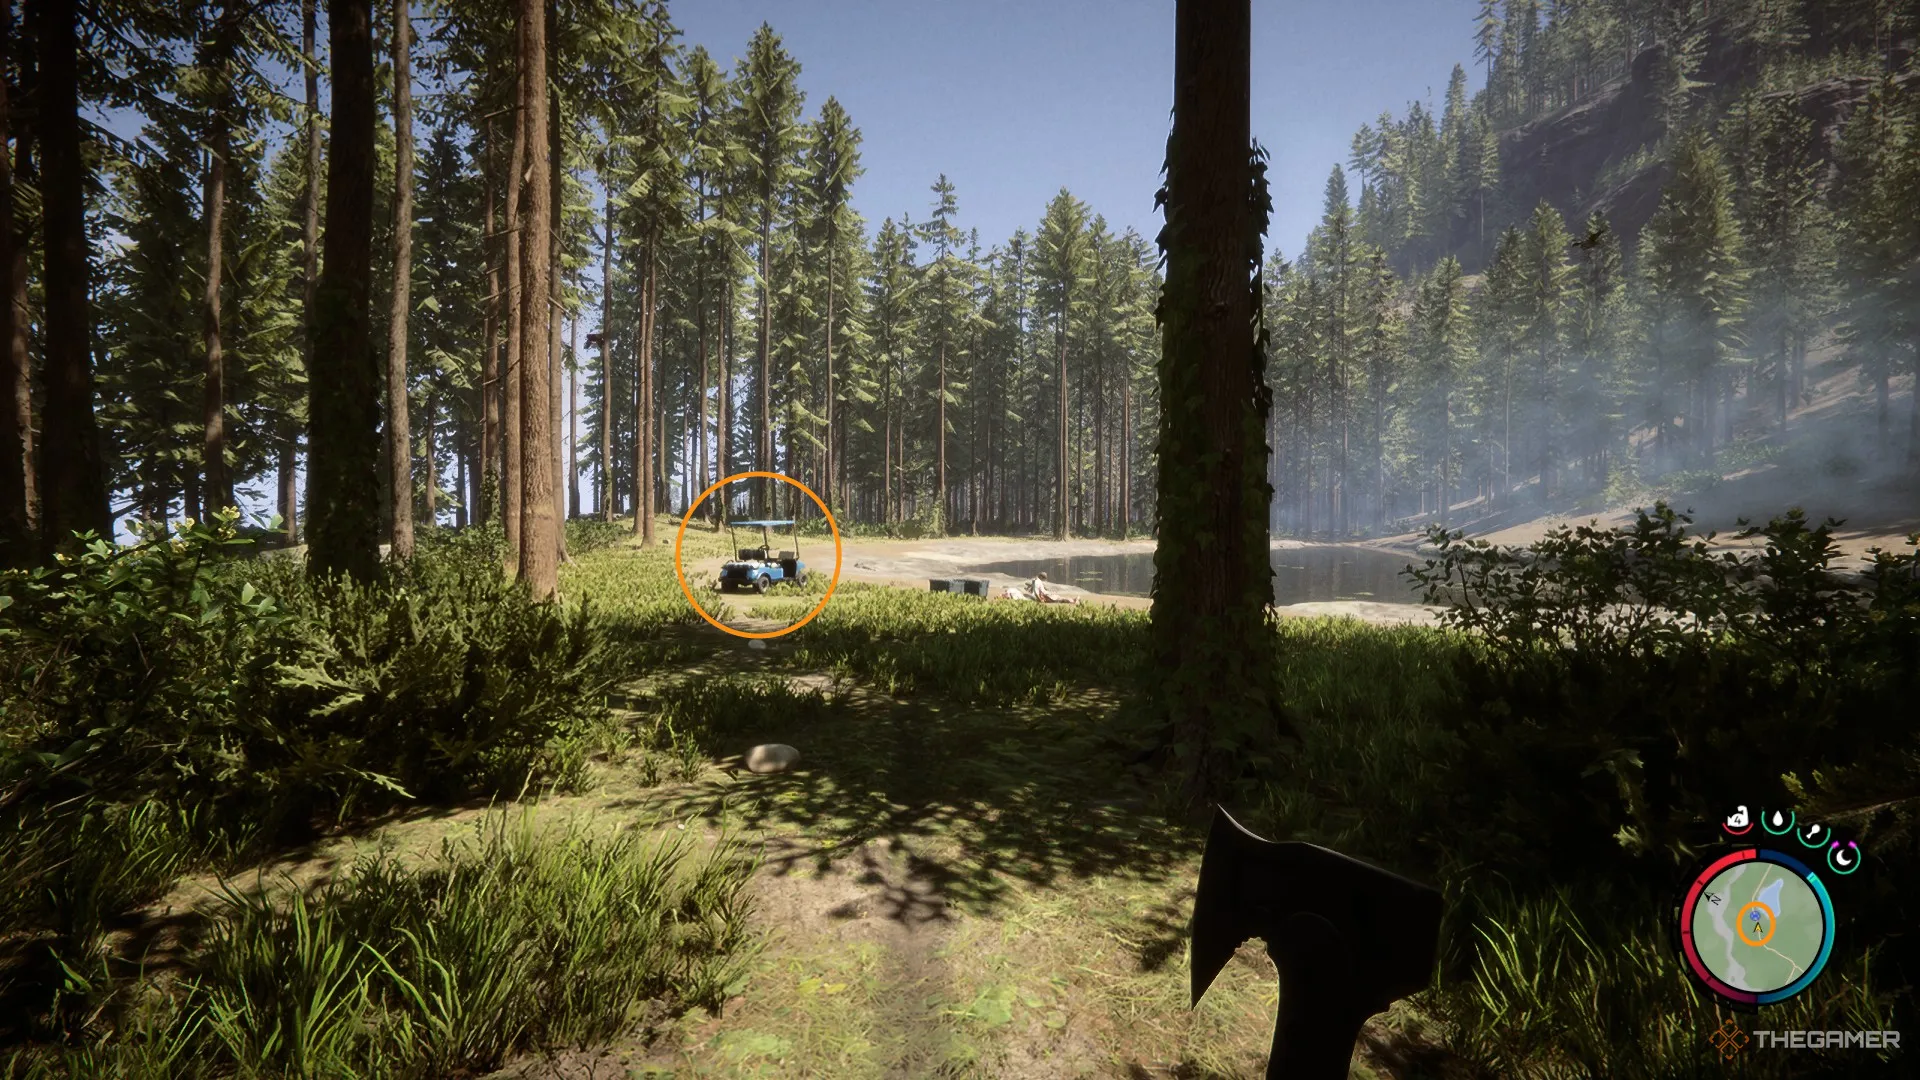 Скриншот из Sons of the Forest, показывающий гольф-карт рядом с прудом на поляне.